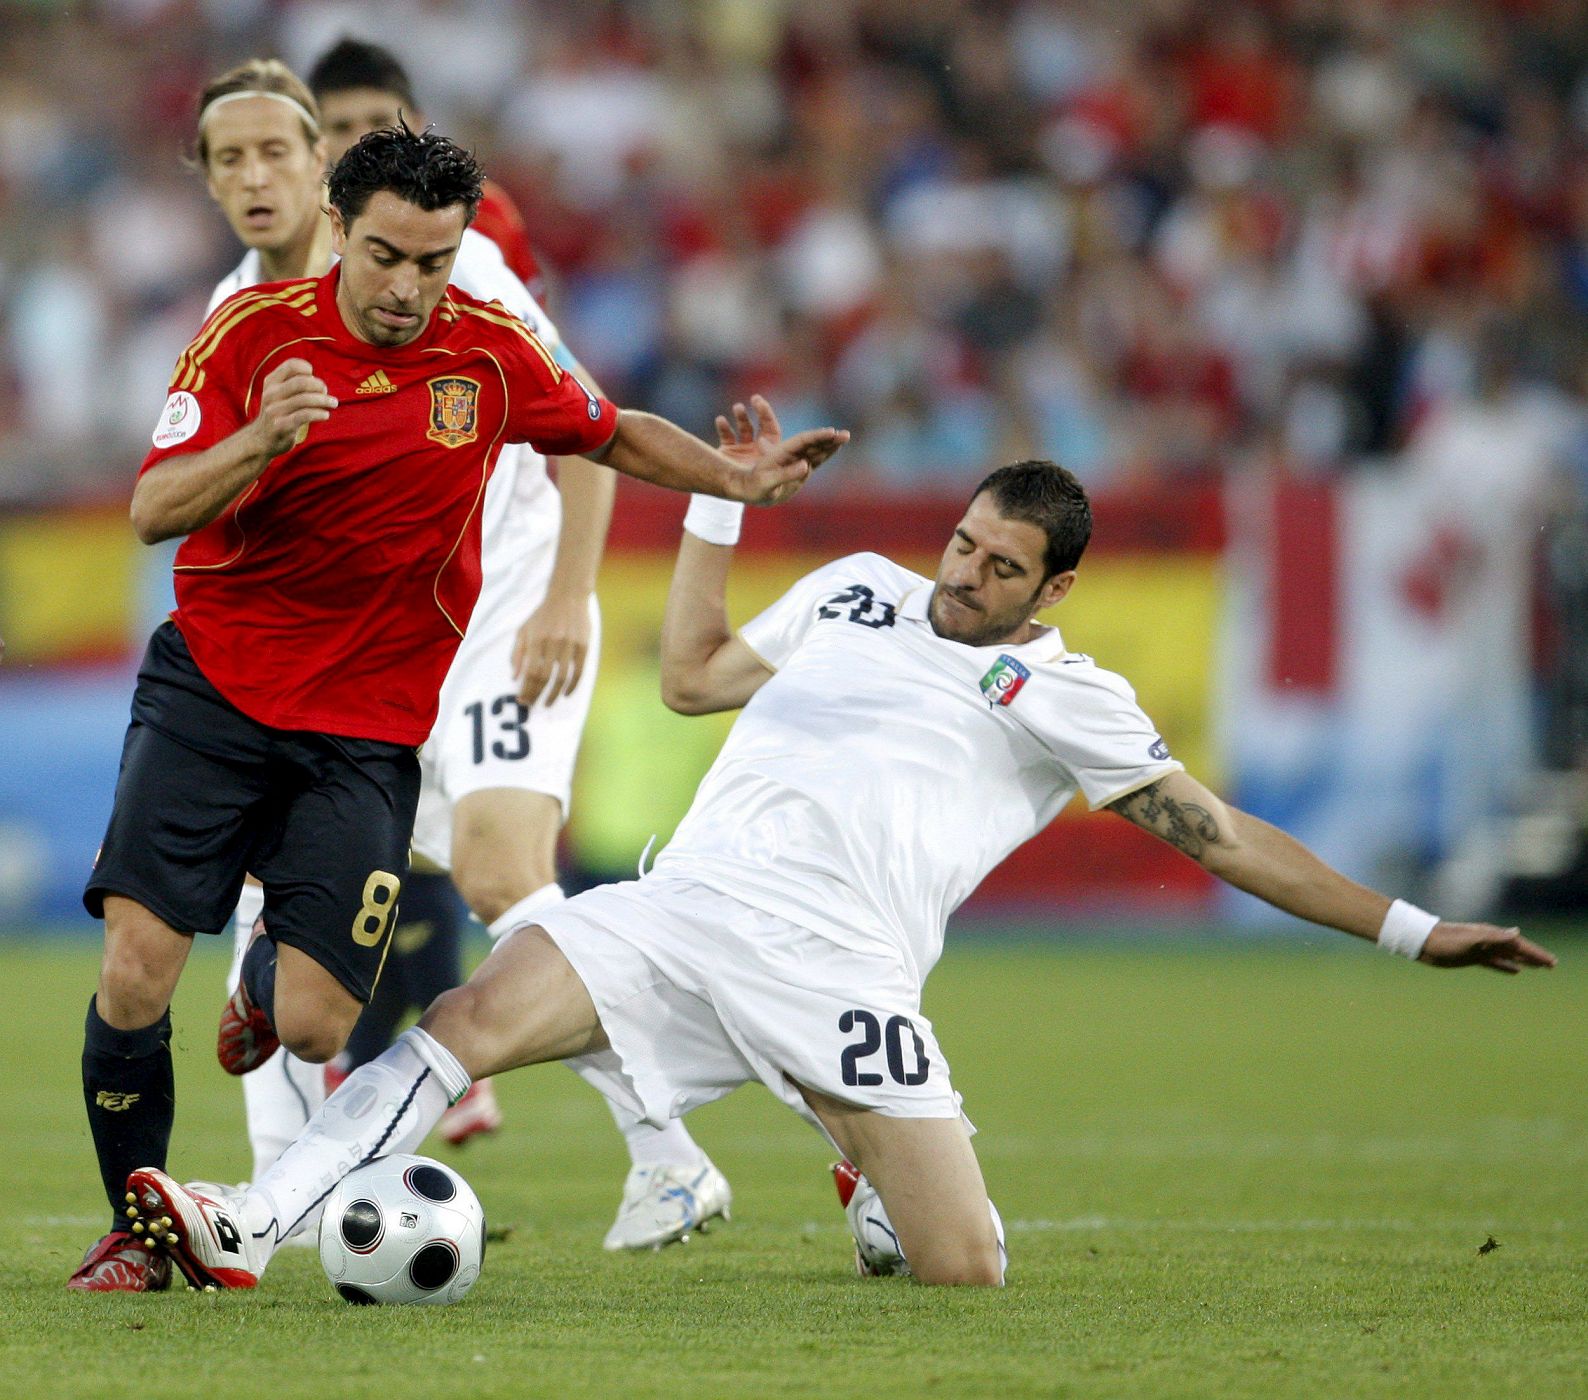 El centrocampista español, Xavi Hernández, estuvo peor que en otros partidos y fue sustituido en el minuto 58.